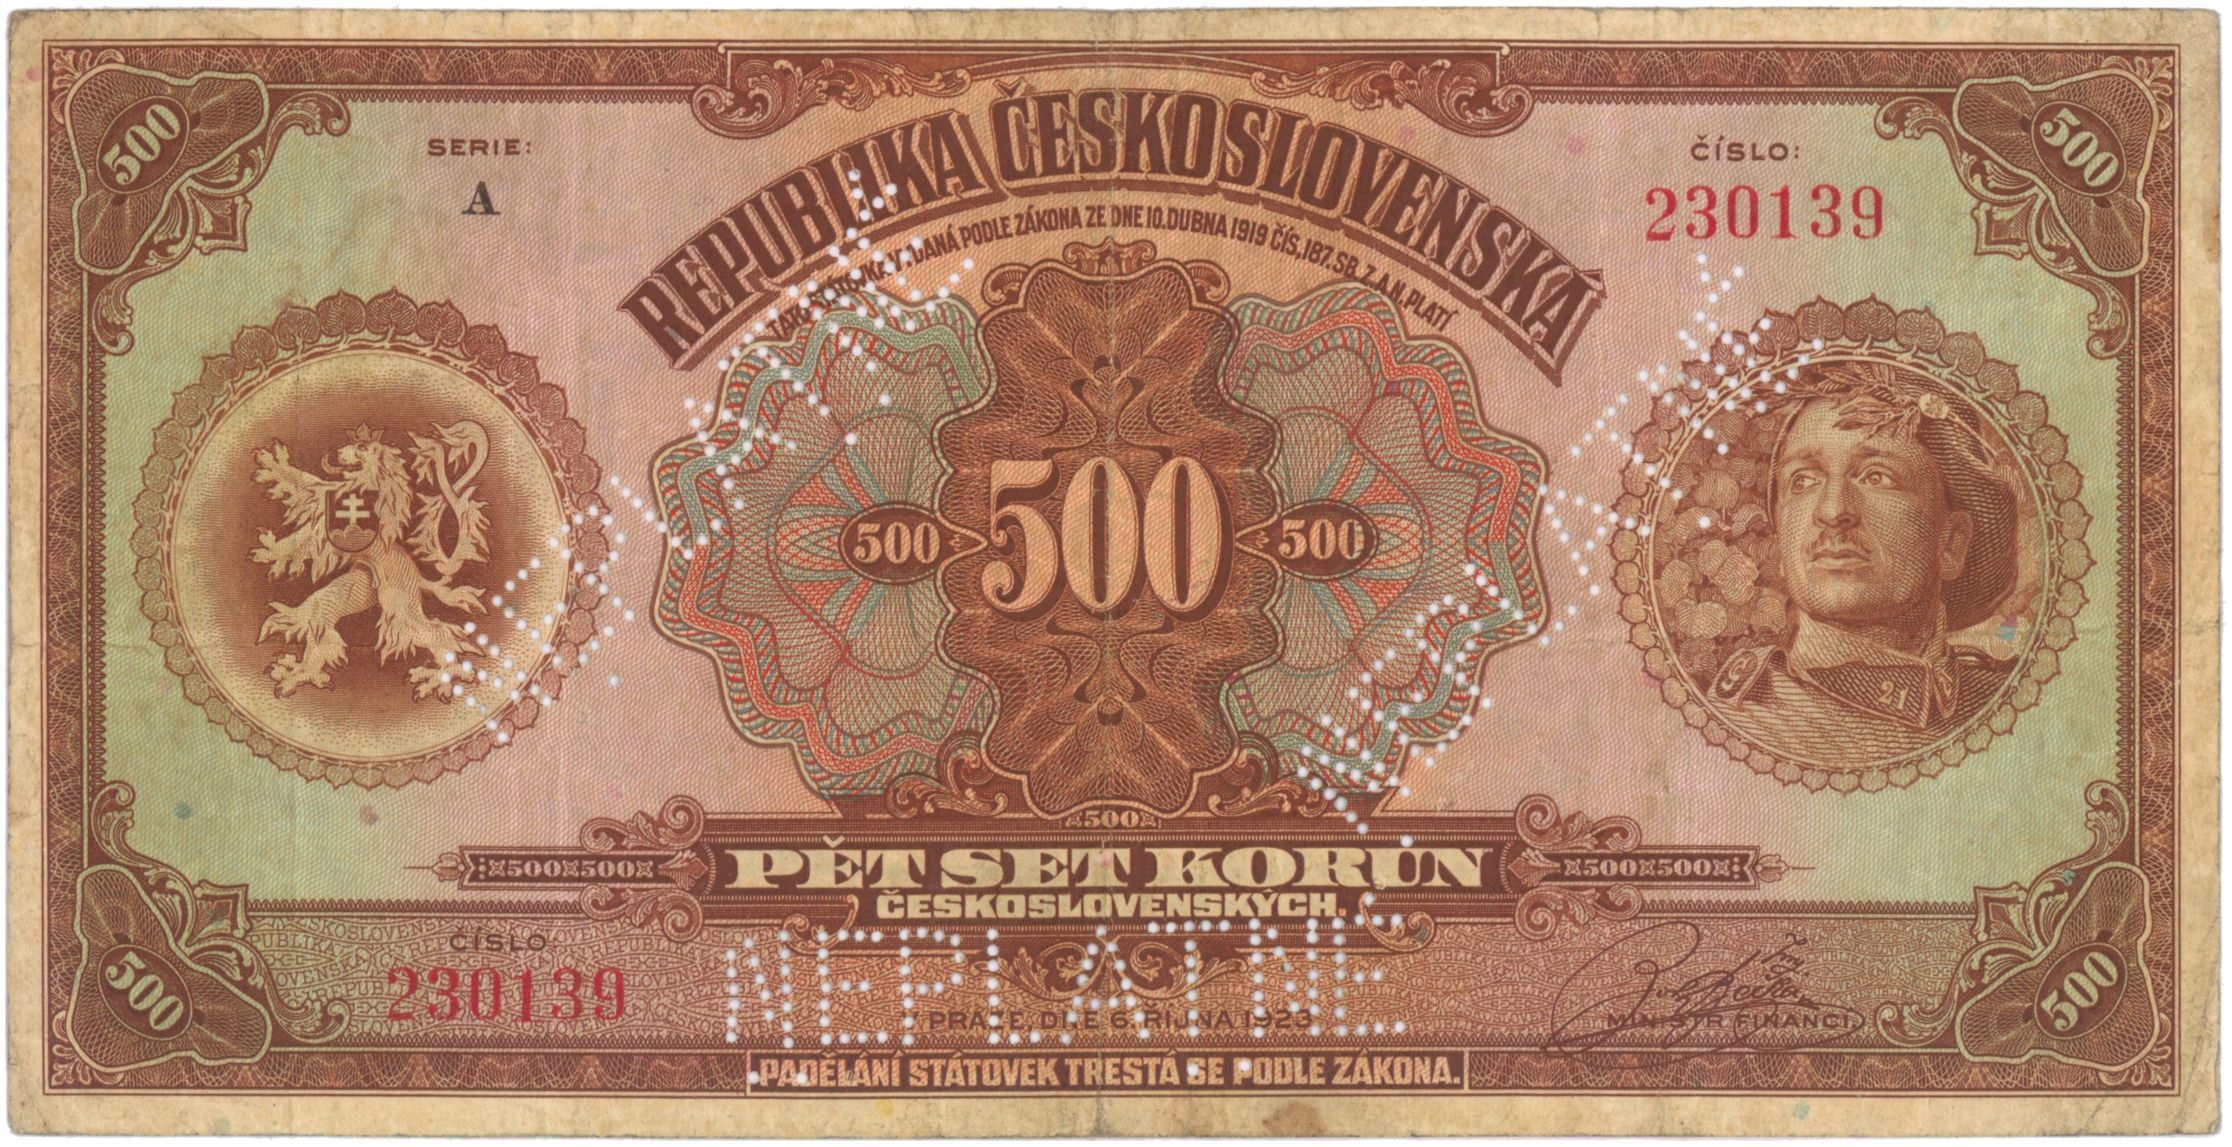 Historie česko-slovenské měny